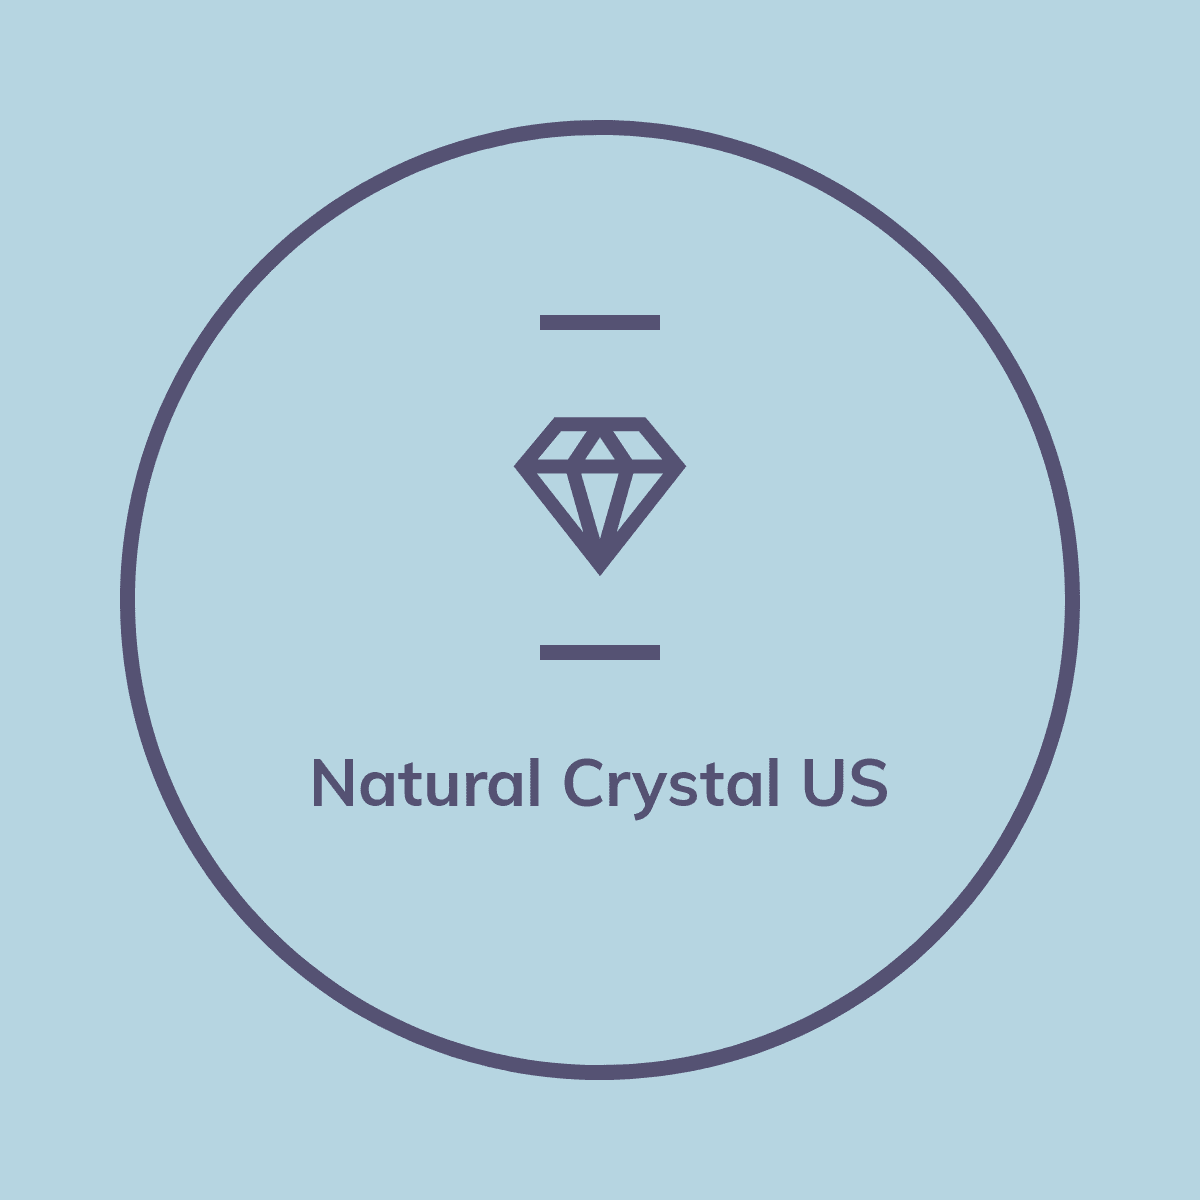 Natural Crystal US